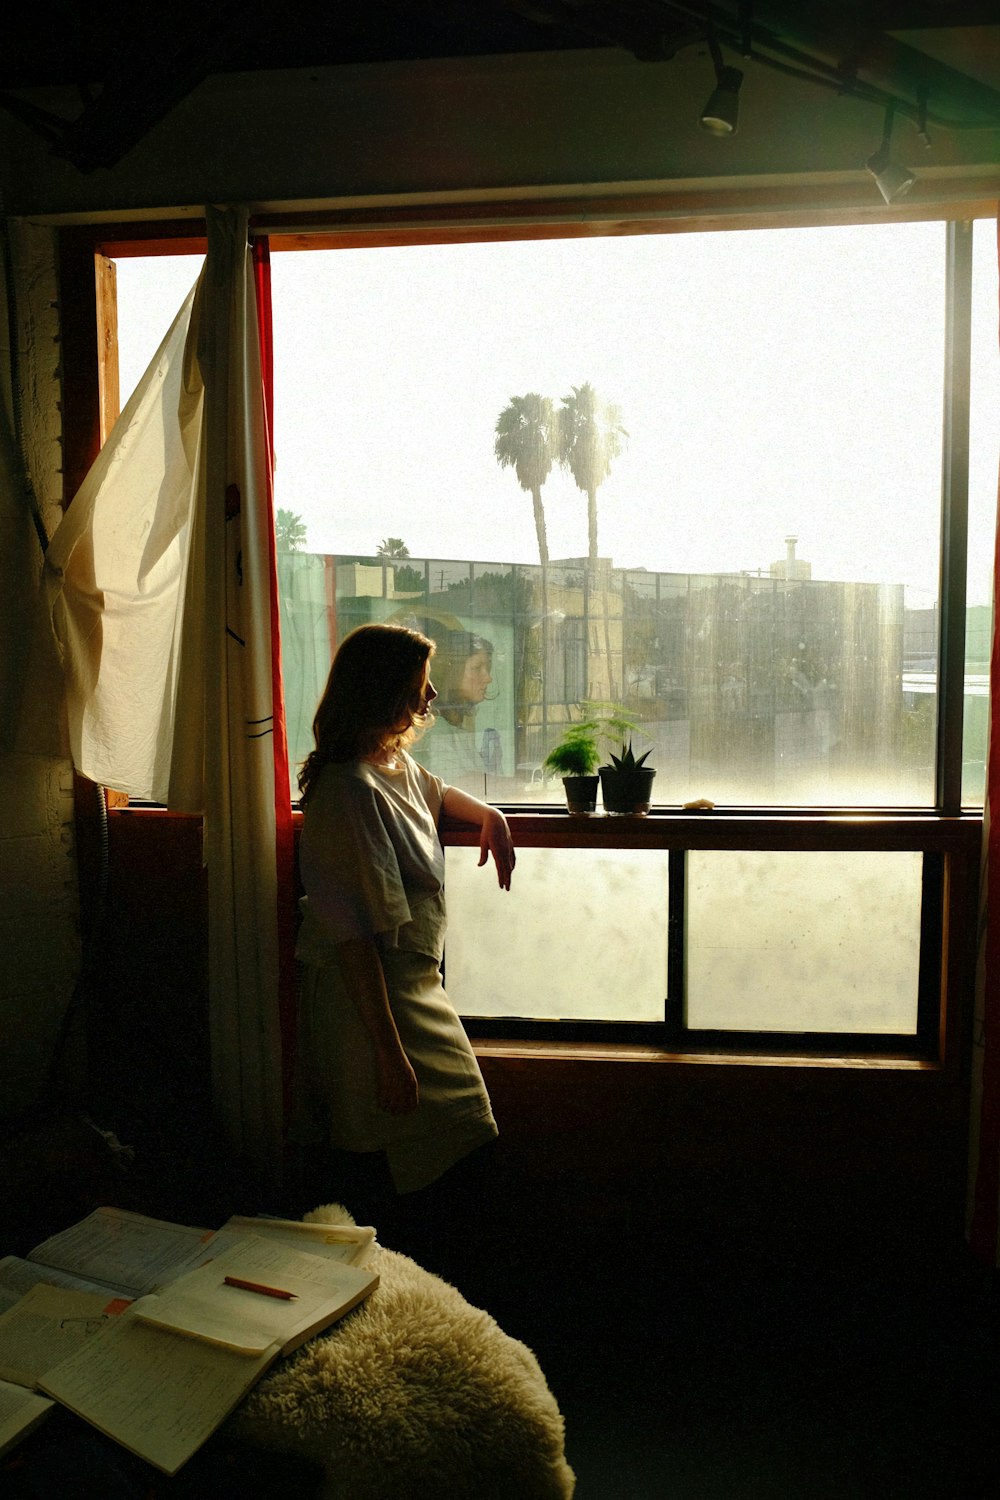 Una mujer parada frente a una ventana mirando hacia afuera